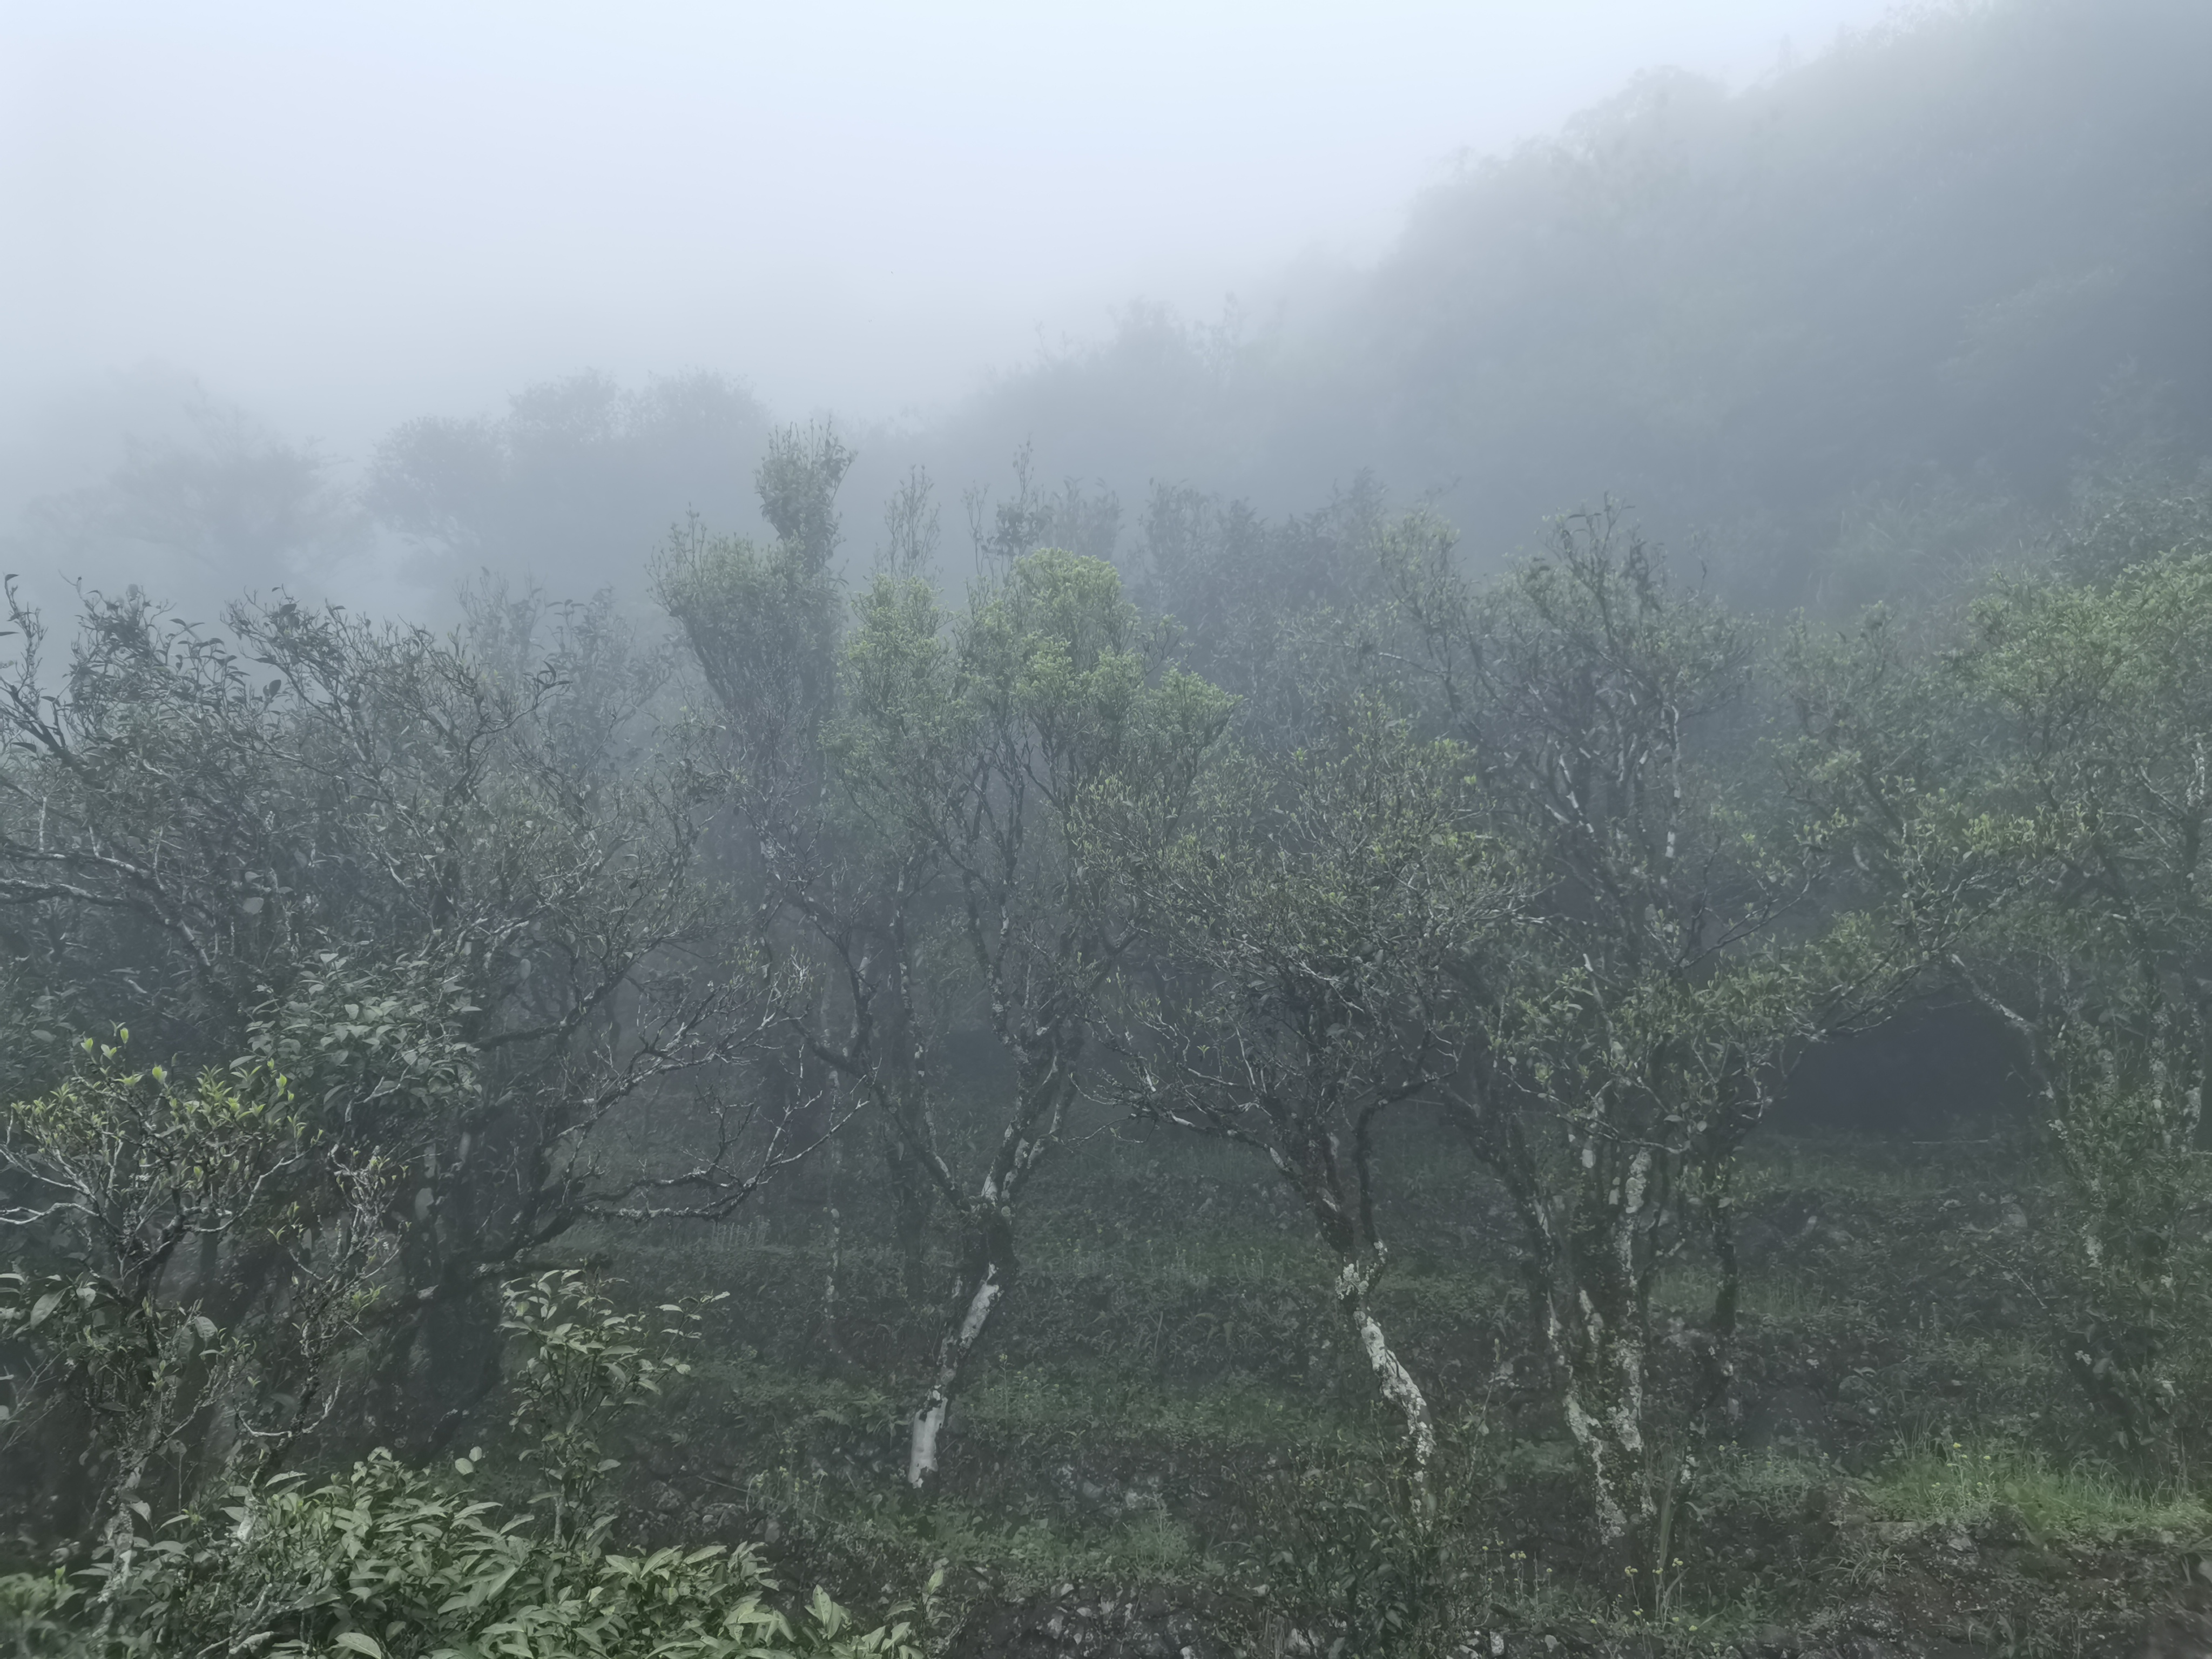 （凤凰山湿润的气候非常适合茶叶的生长，越是经常被云雾滋养的茶树，成品效果越好，价格也卖得更高。）